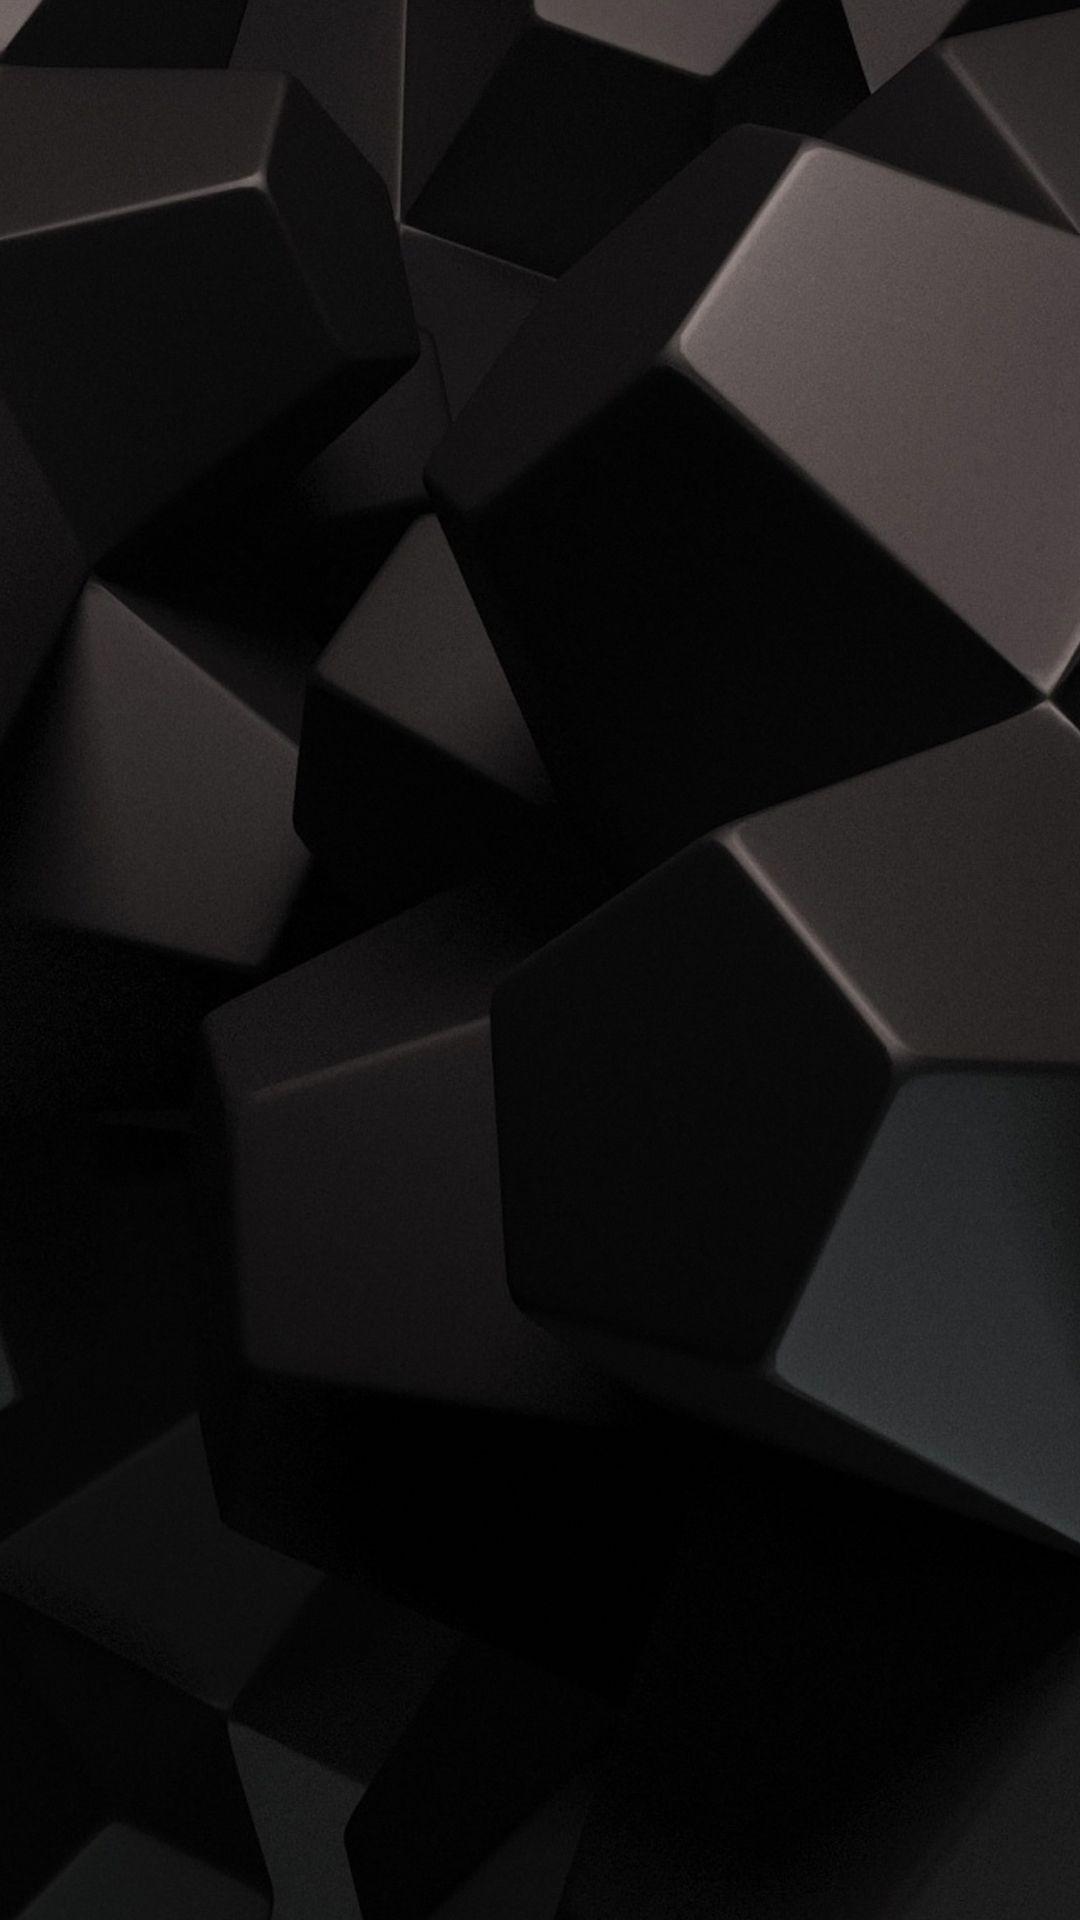 Black 3D Wallpapers sẽ khiến cho màn hình của bạn trở nên trang nhã và độc đáo hơn. Tận hưởng chất lượng hình ảnh tuyệt đẹp cùng với những hình ảnh tốt nhất và đầy ấn tượng.